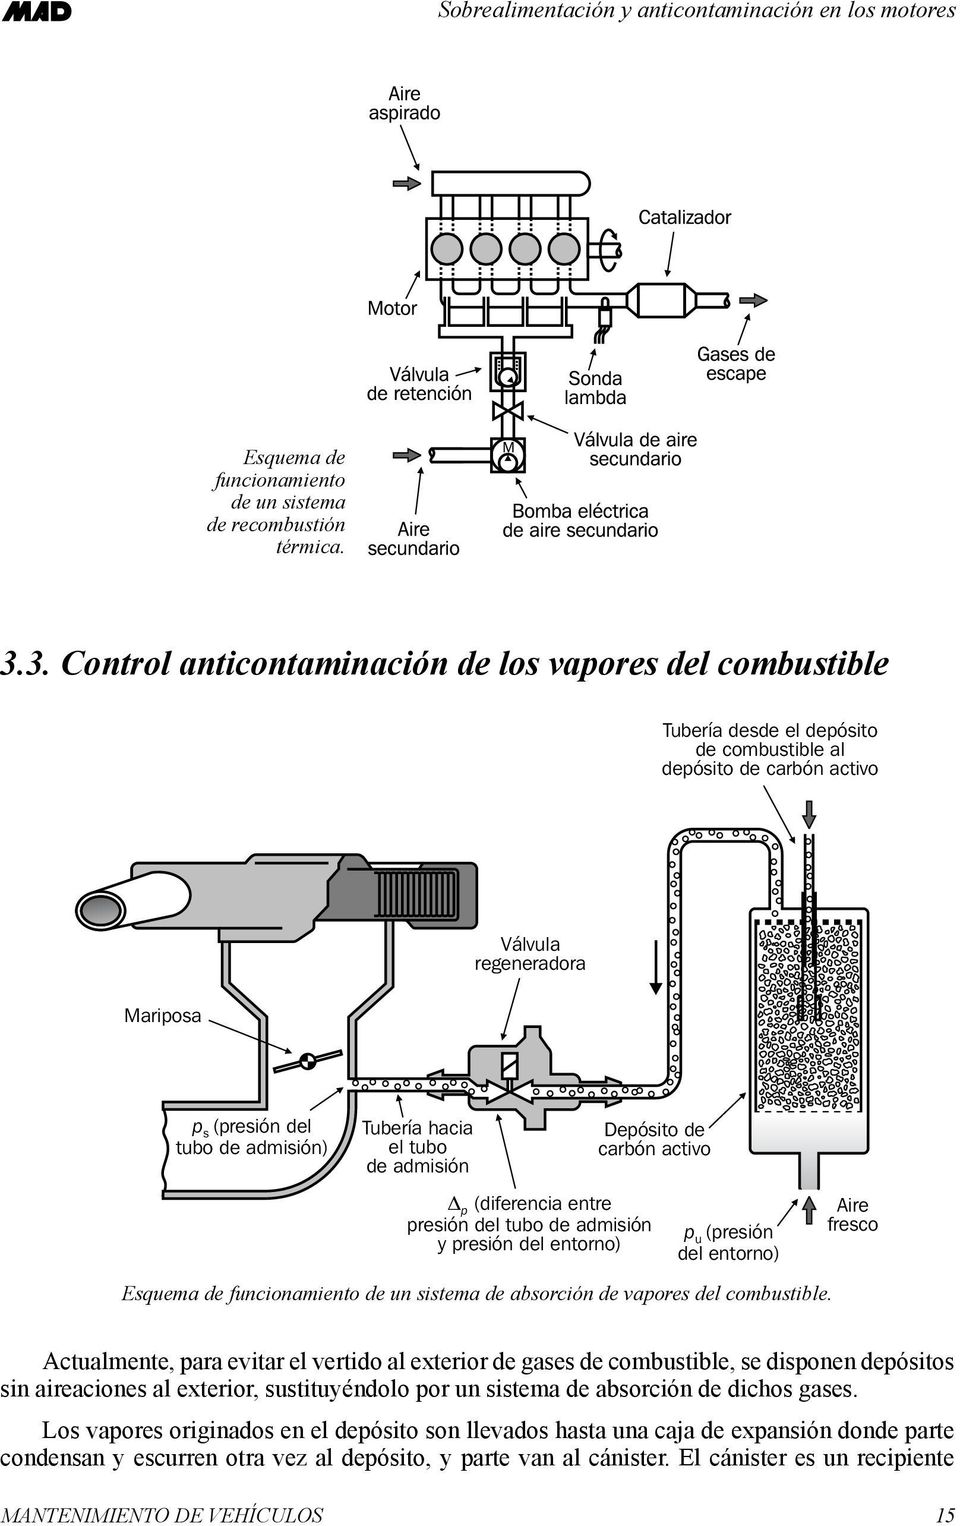 Tubería hacia el tubo de admisión Depósito de carbón activo p (diferencia entre presión del tubo de admisión y presión del entorno) p u (presión del entorno) Esquema de funcionamiento de un sistema